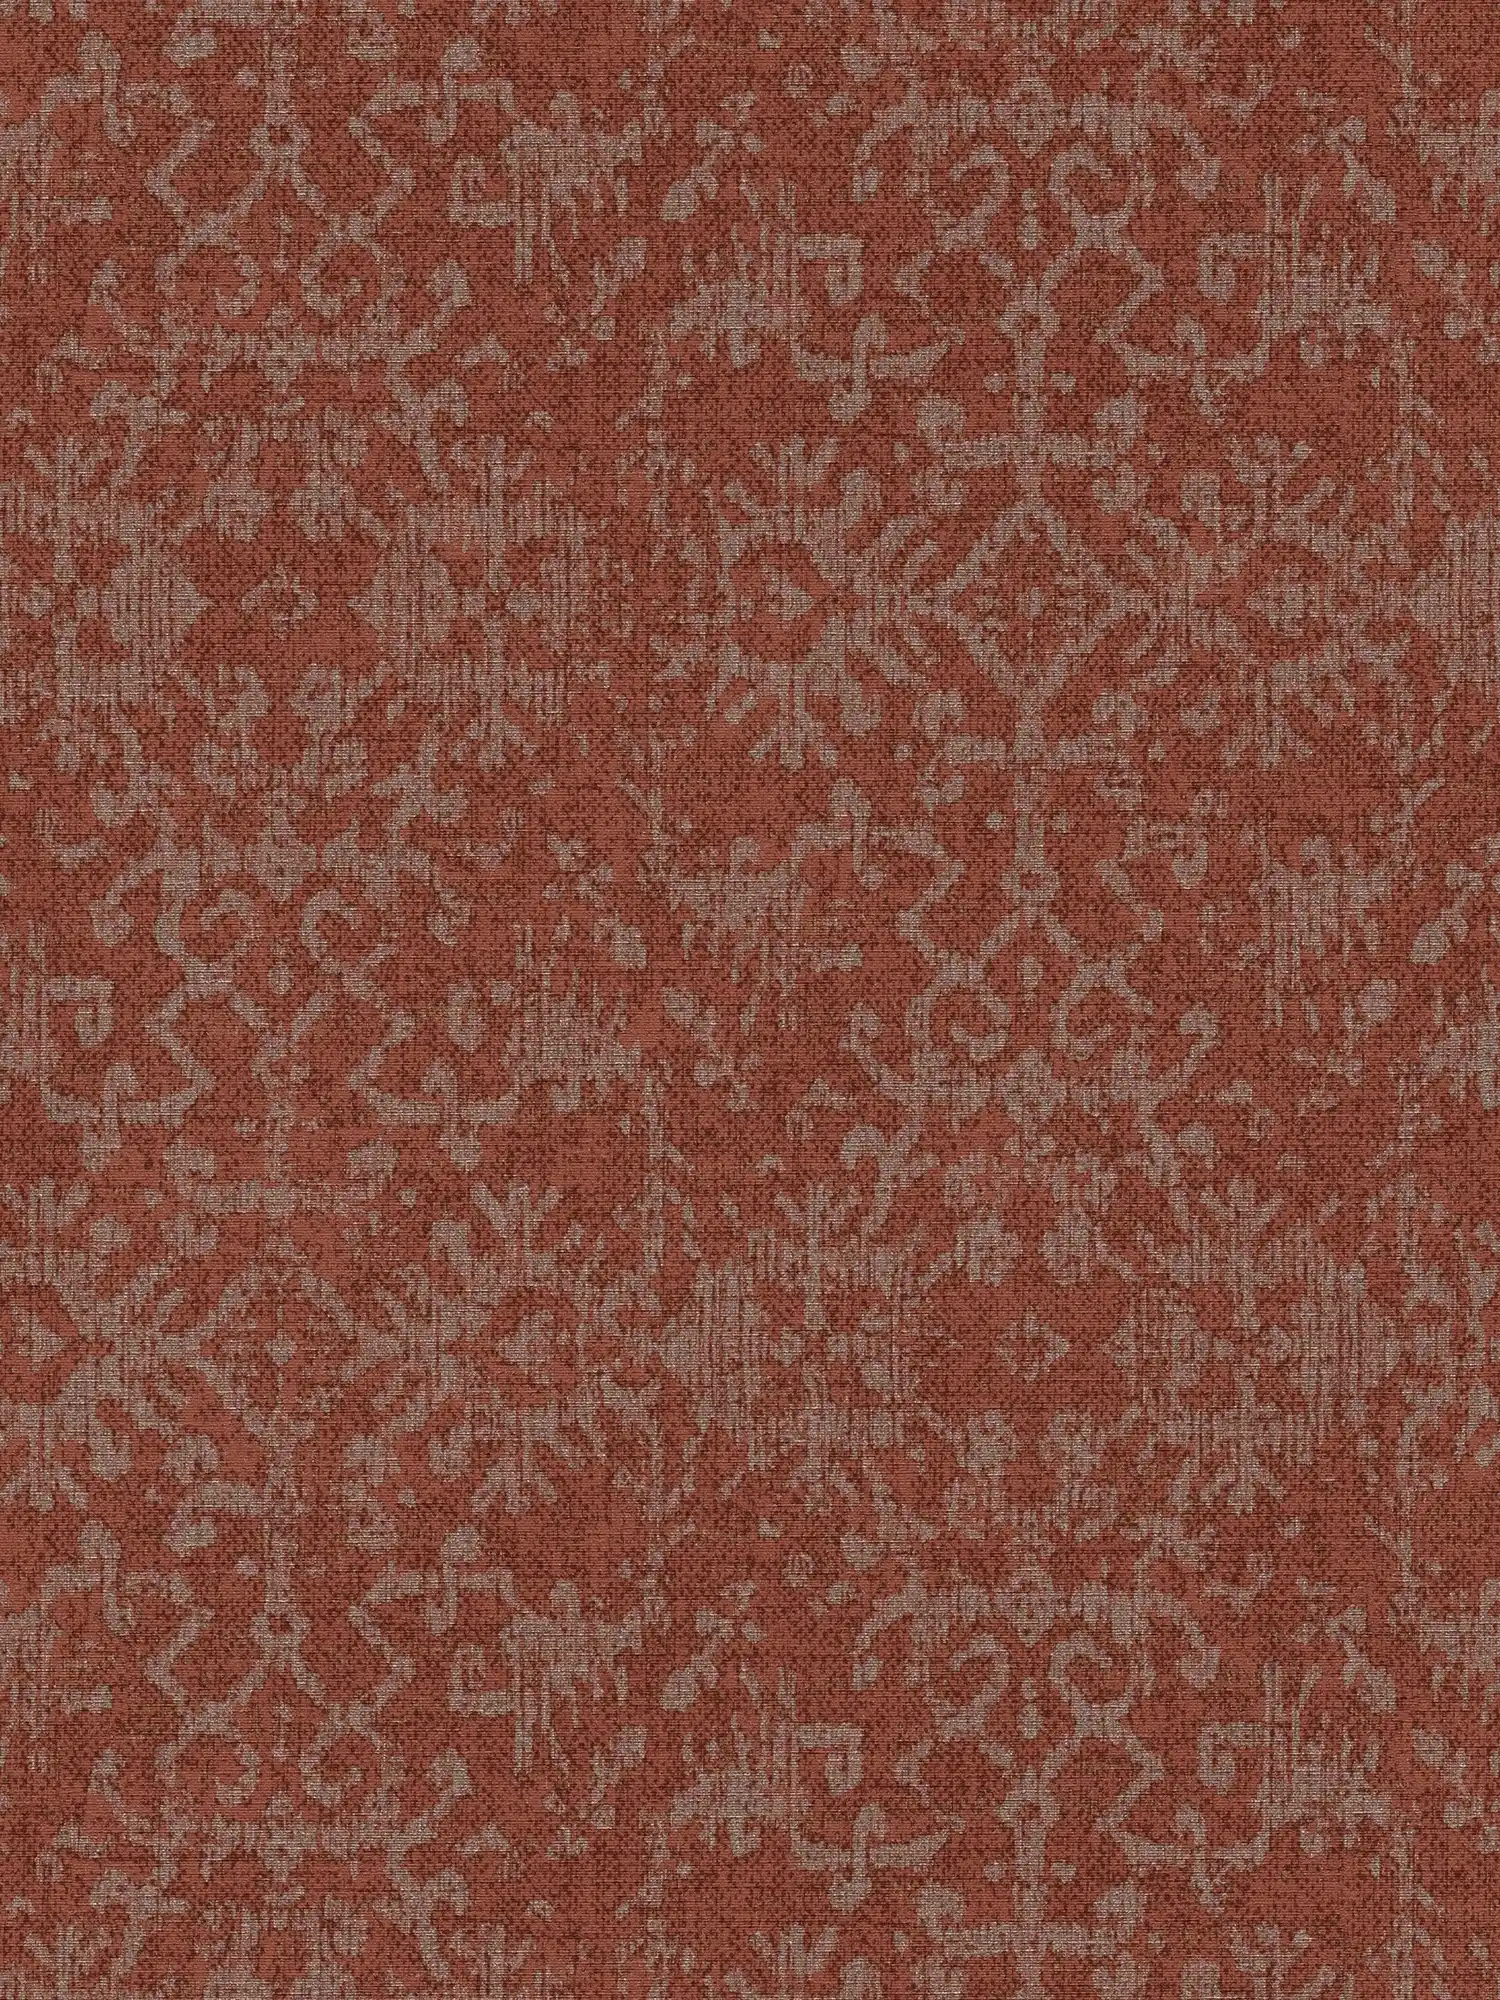 Carta da parati con motivi ornamentali in stile tappeto persiano
